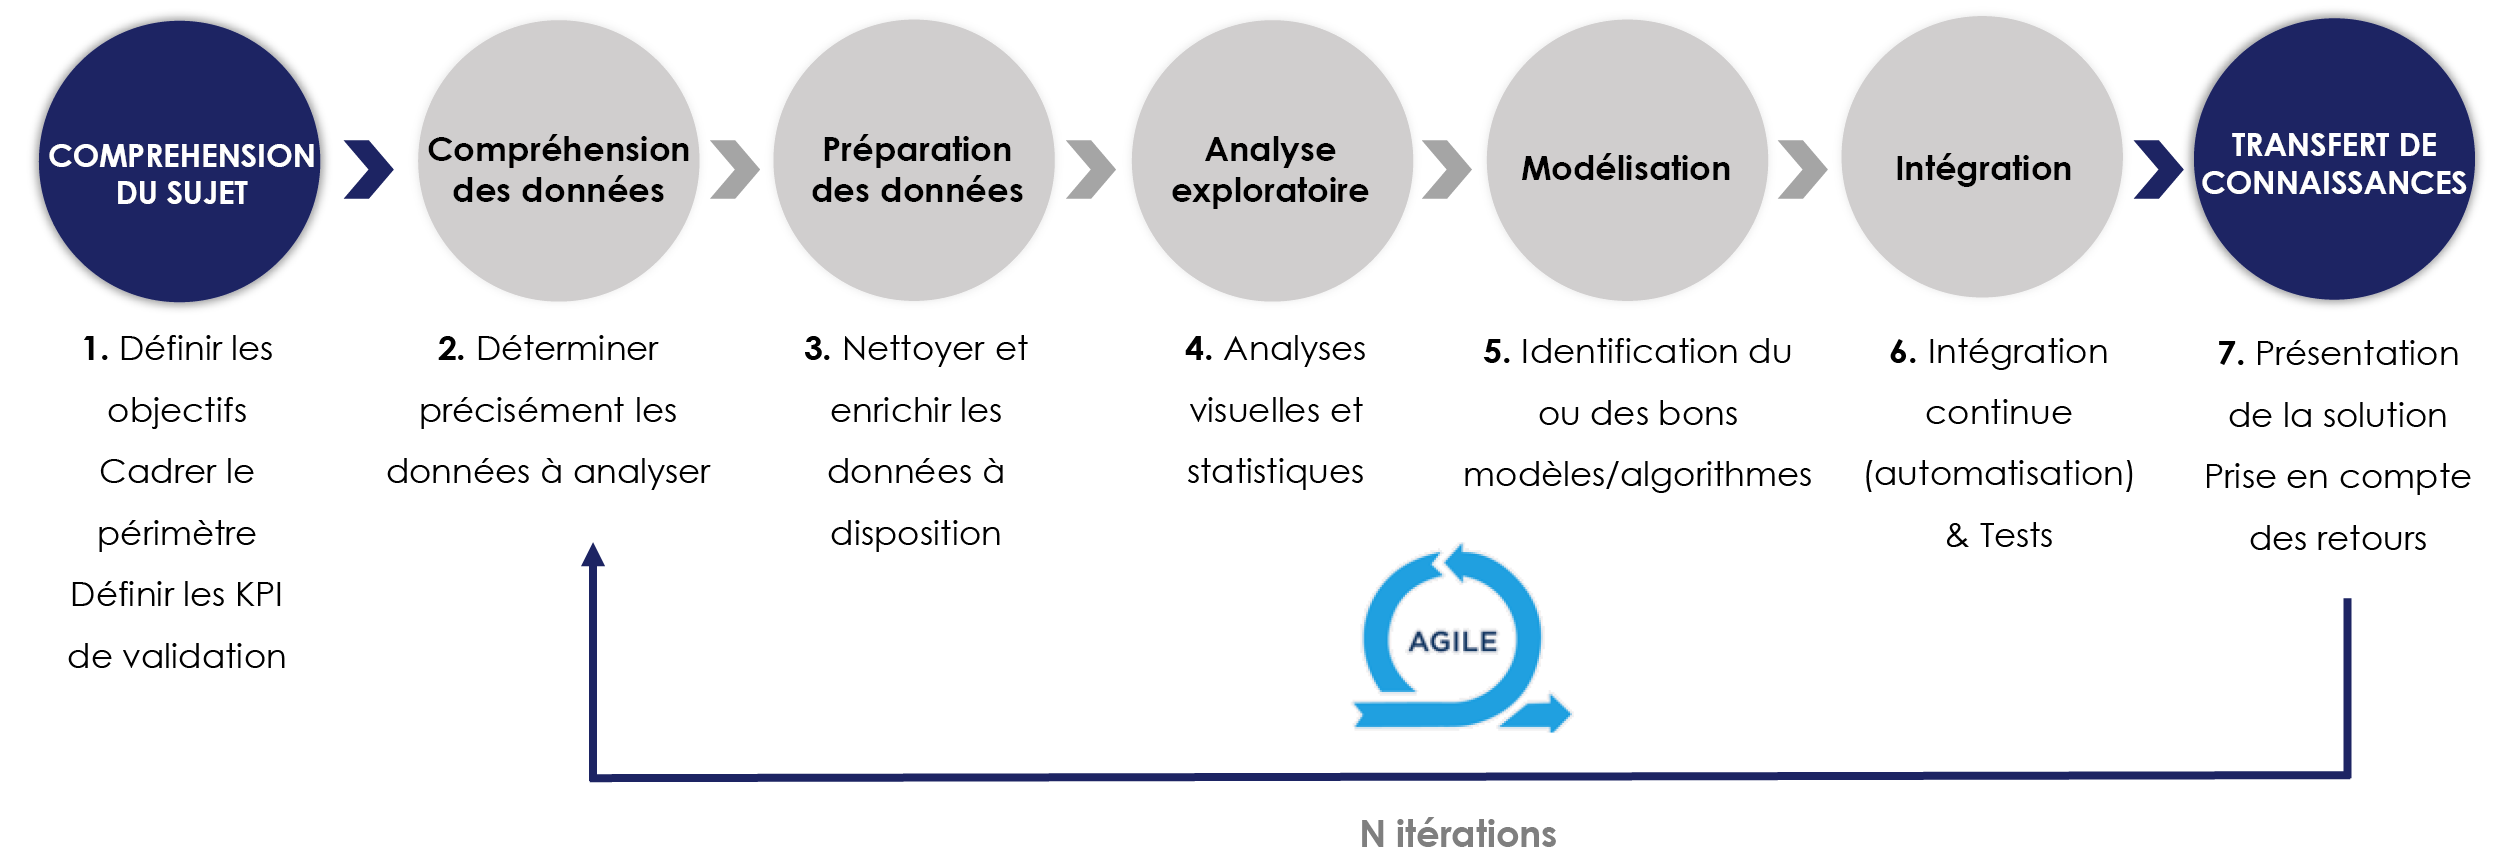 Méthodologie agile et itérative pour le développement de cas d’usage marketing Big Data et Data science